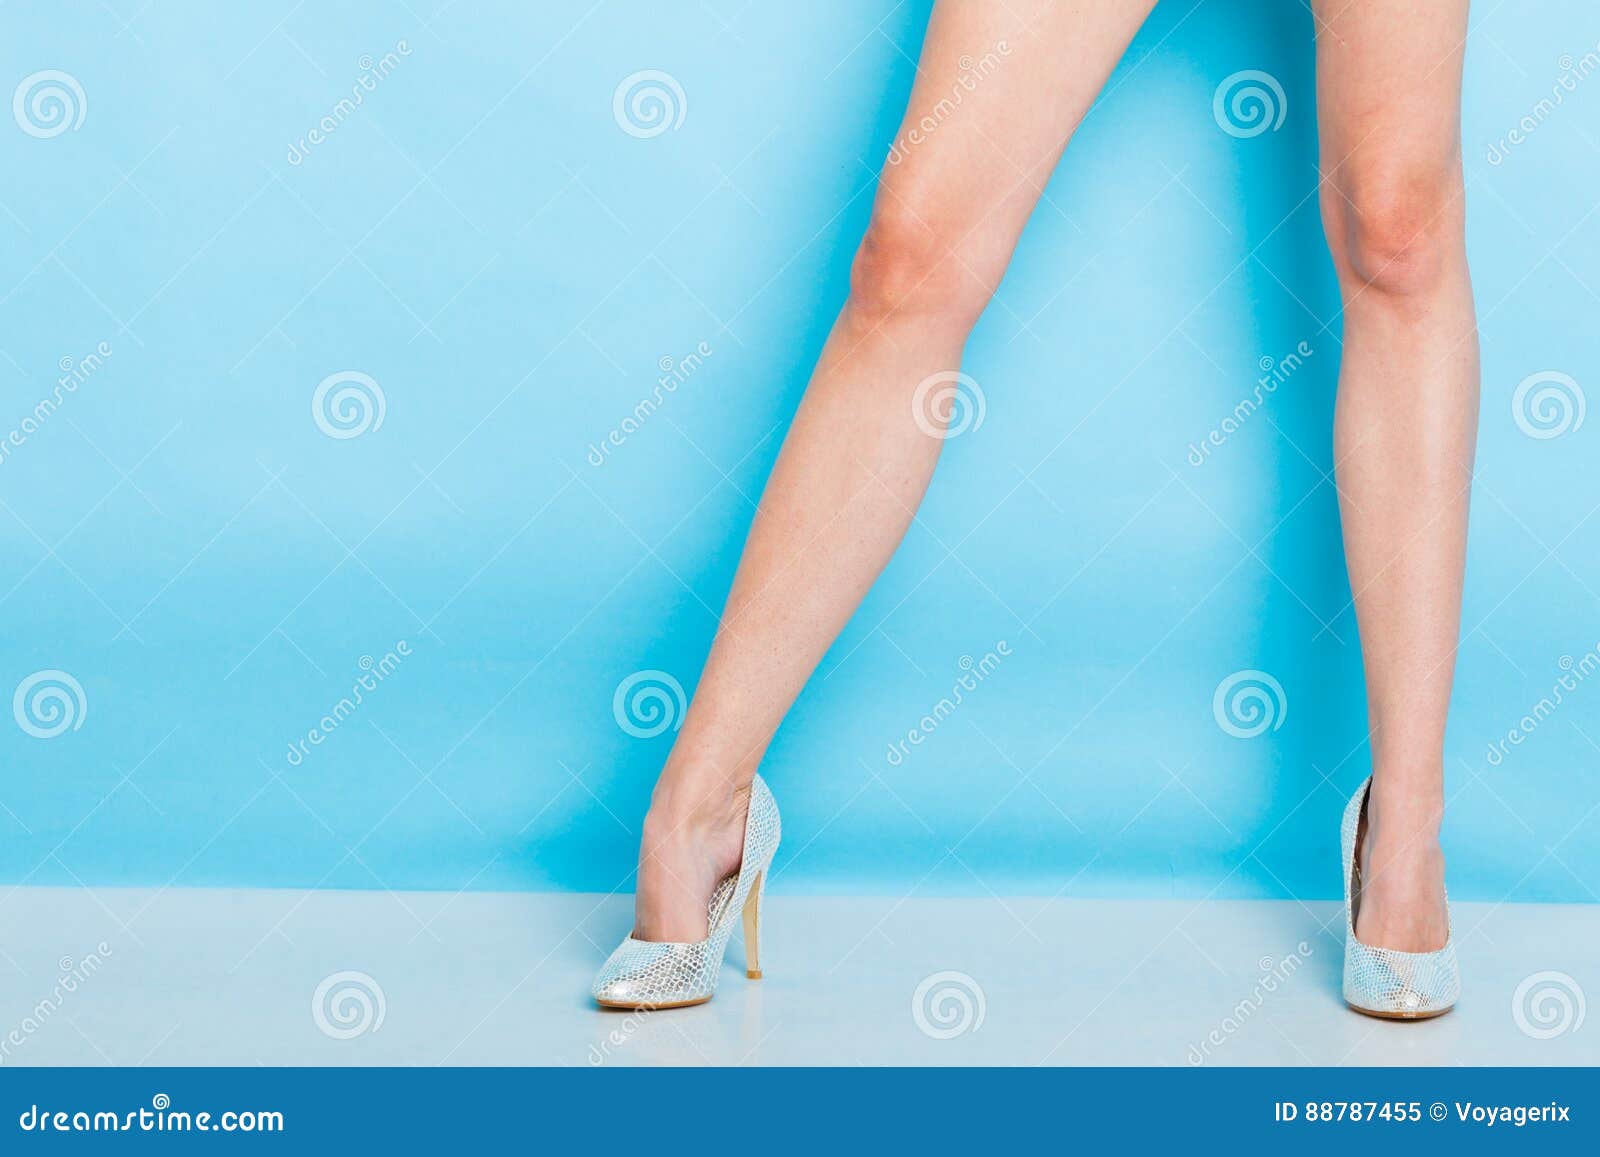 Θηλυκά πόδια στα ασημένια υψηλά παπούτσια τακουνιών. Θηλυκή μόδα Τα ασημένια υψηλά τακούνια κάρφωσαν τα μοντέρνα παπούτσια στα προκλητικά μακριά πόδια Στούντιο που πυροβολείται ενάντια στο μπλε